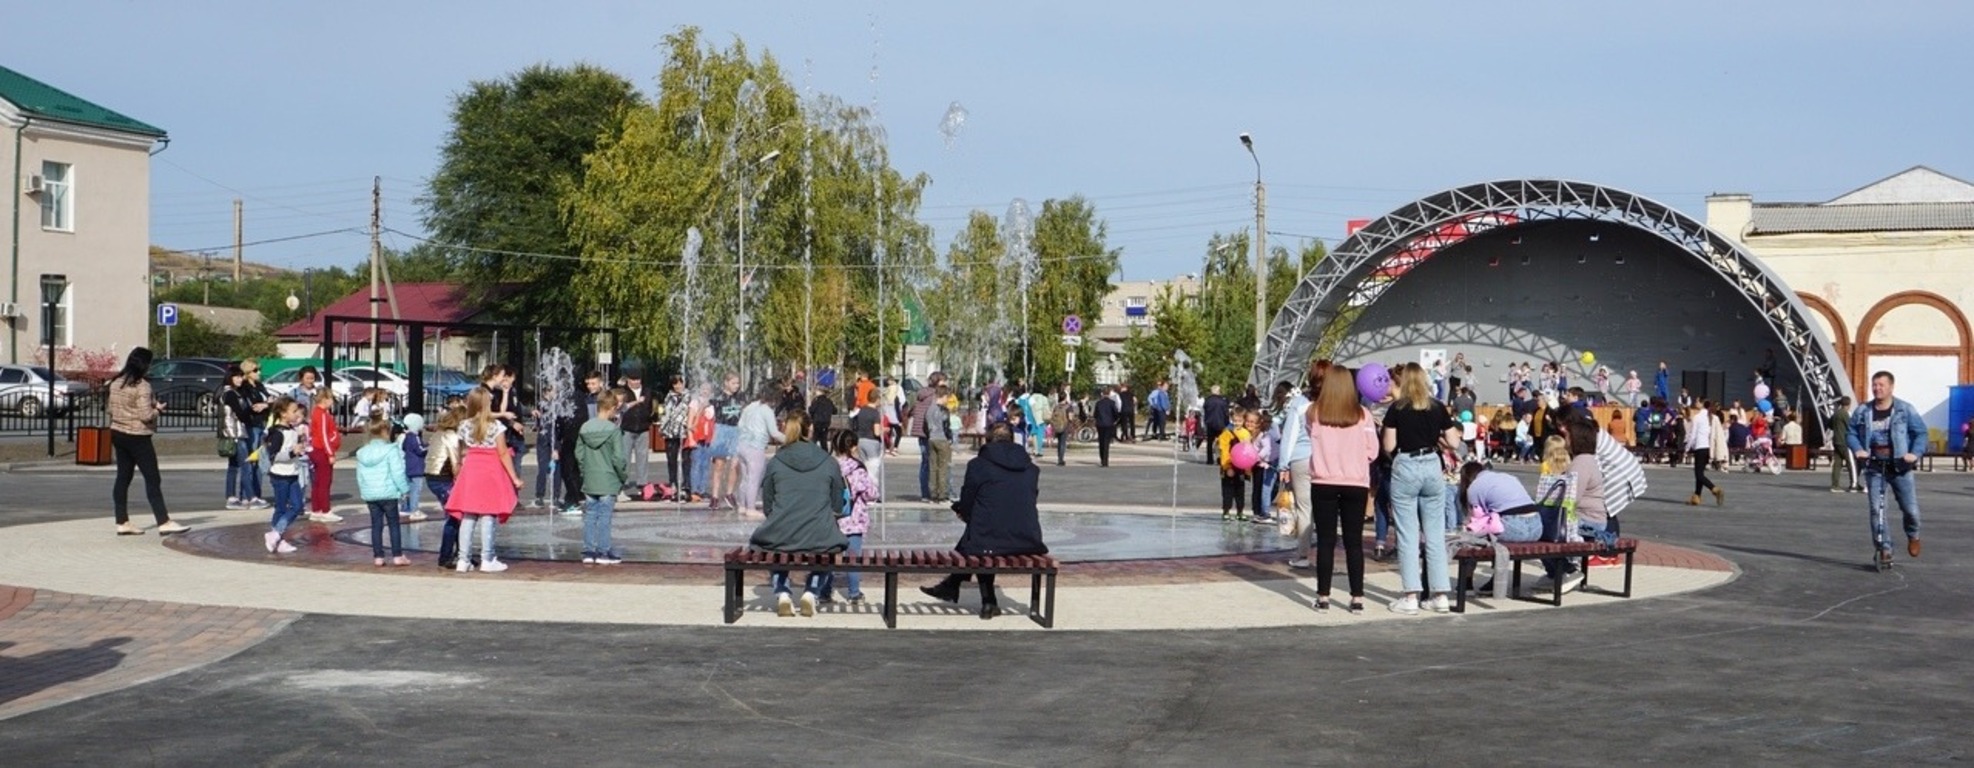 Площадь города Октябрьск Самарской области